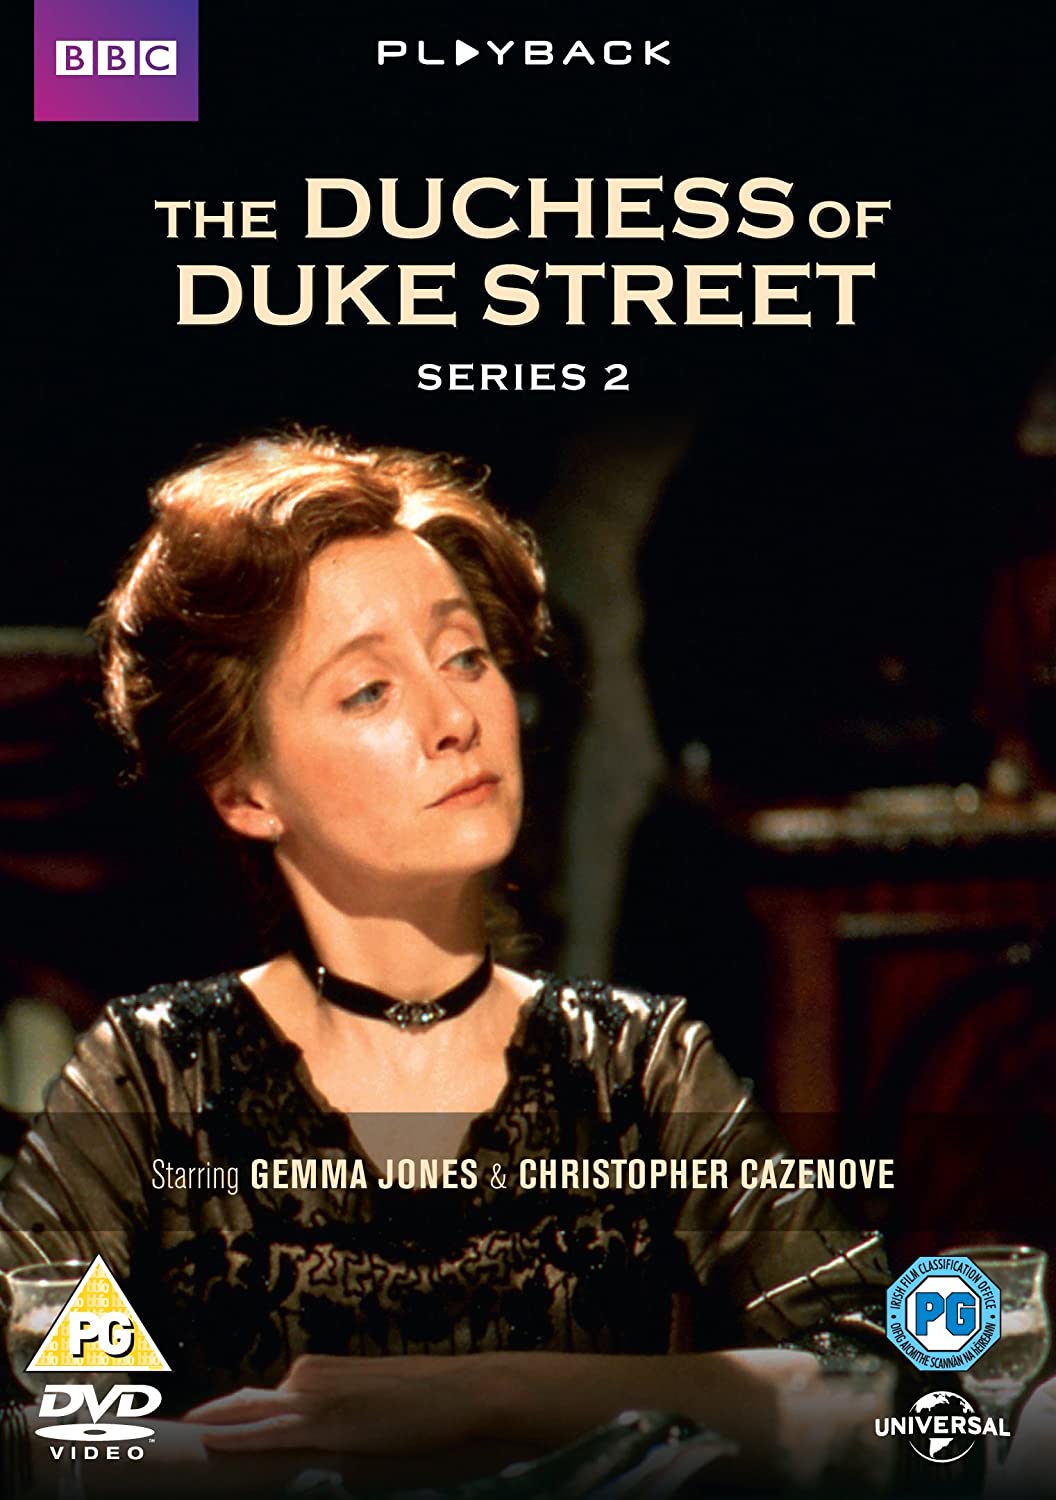 The Duchess of Duke Street - Series 2 [1977] - Drama [DVD]